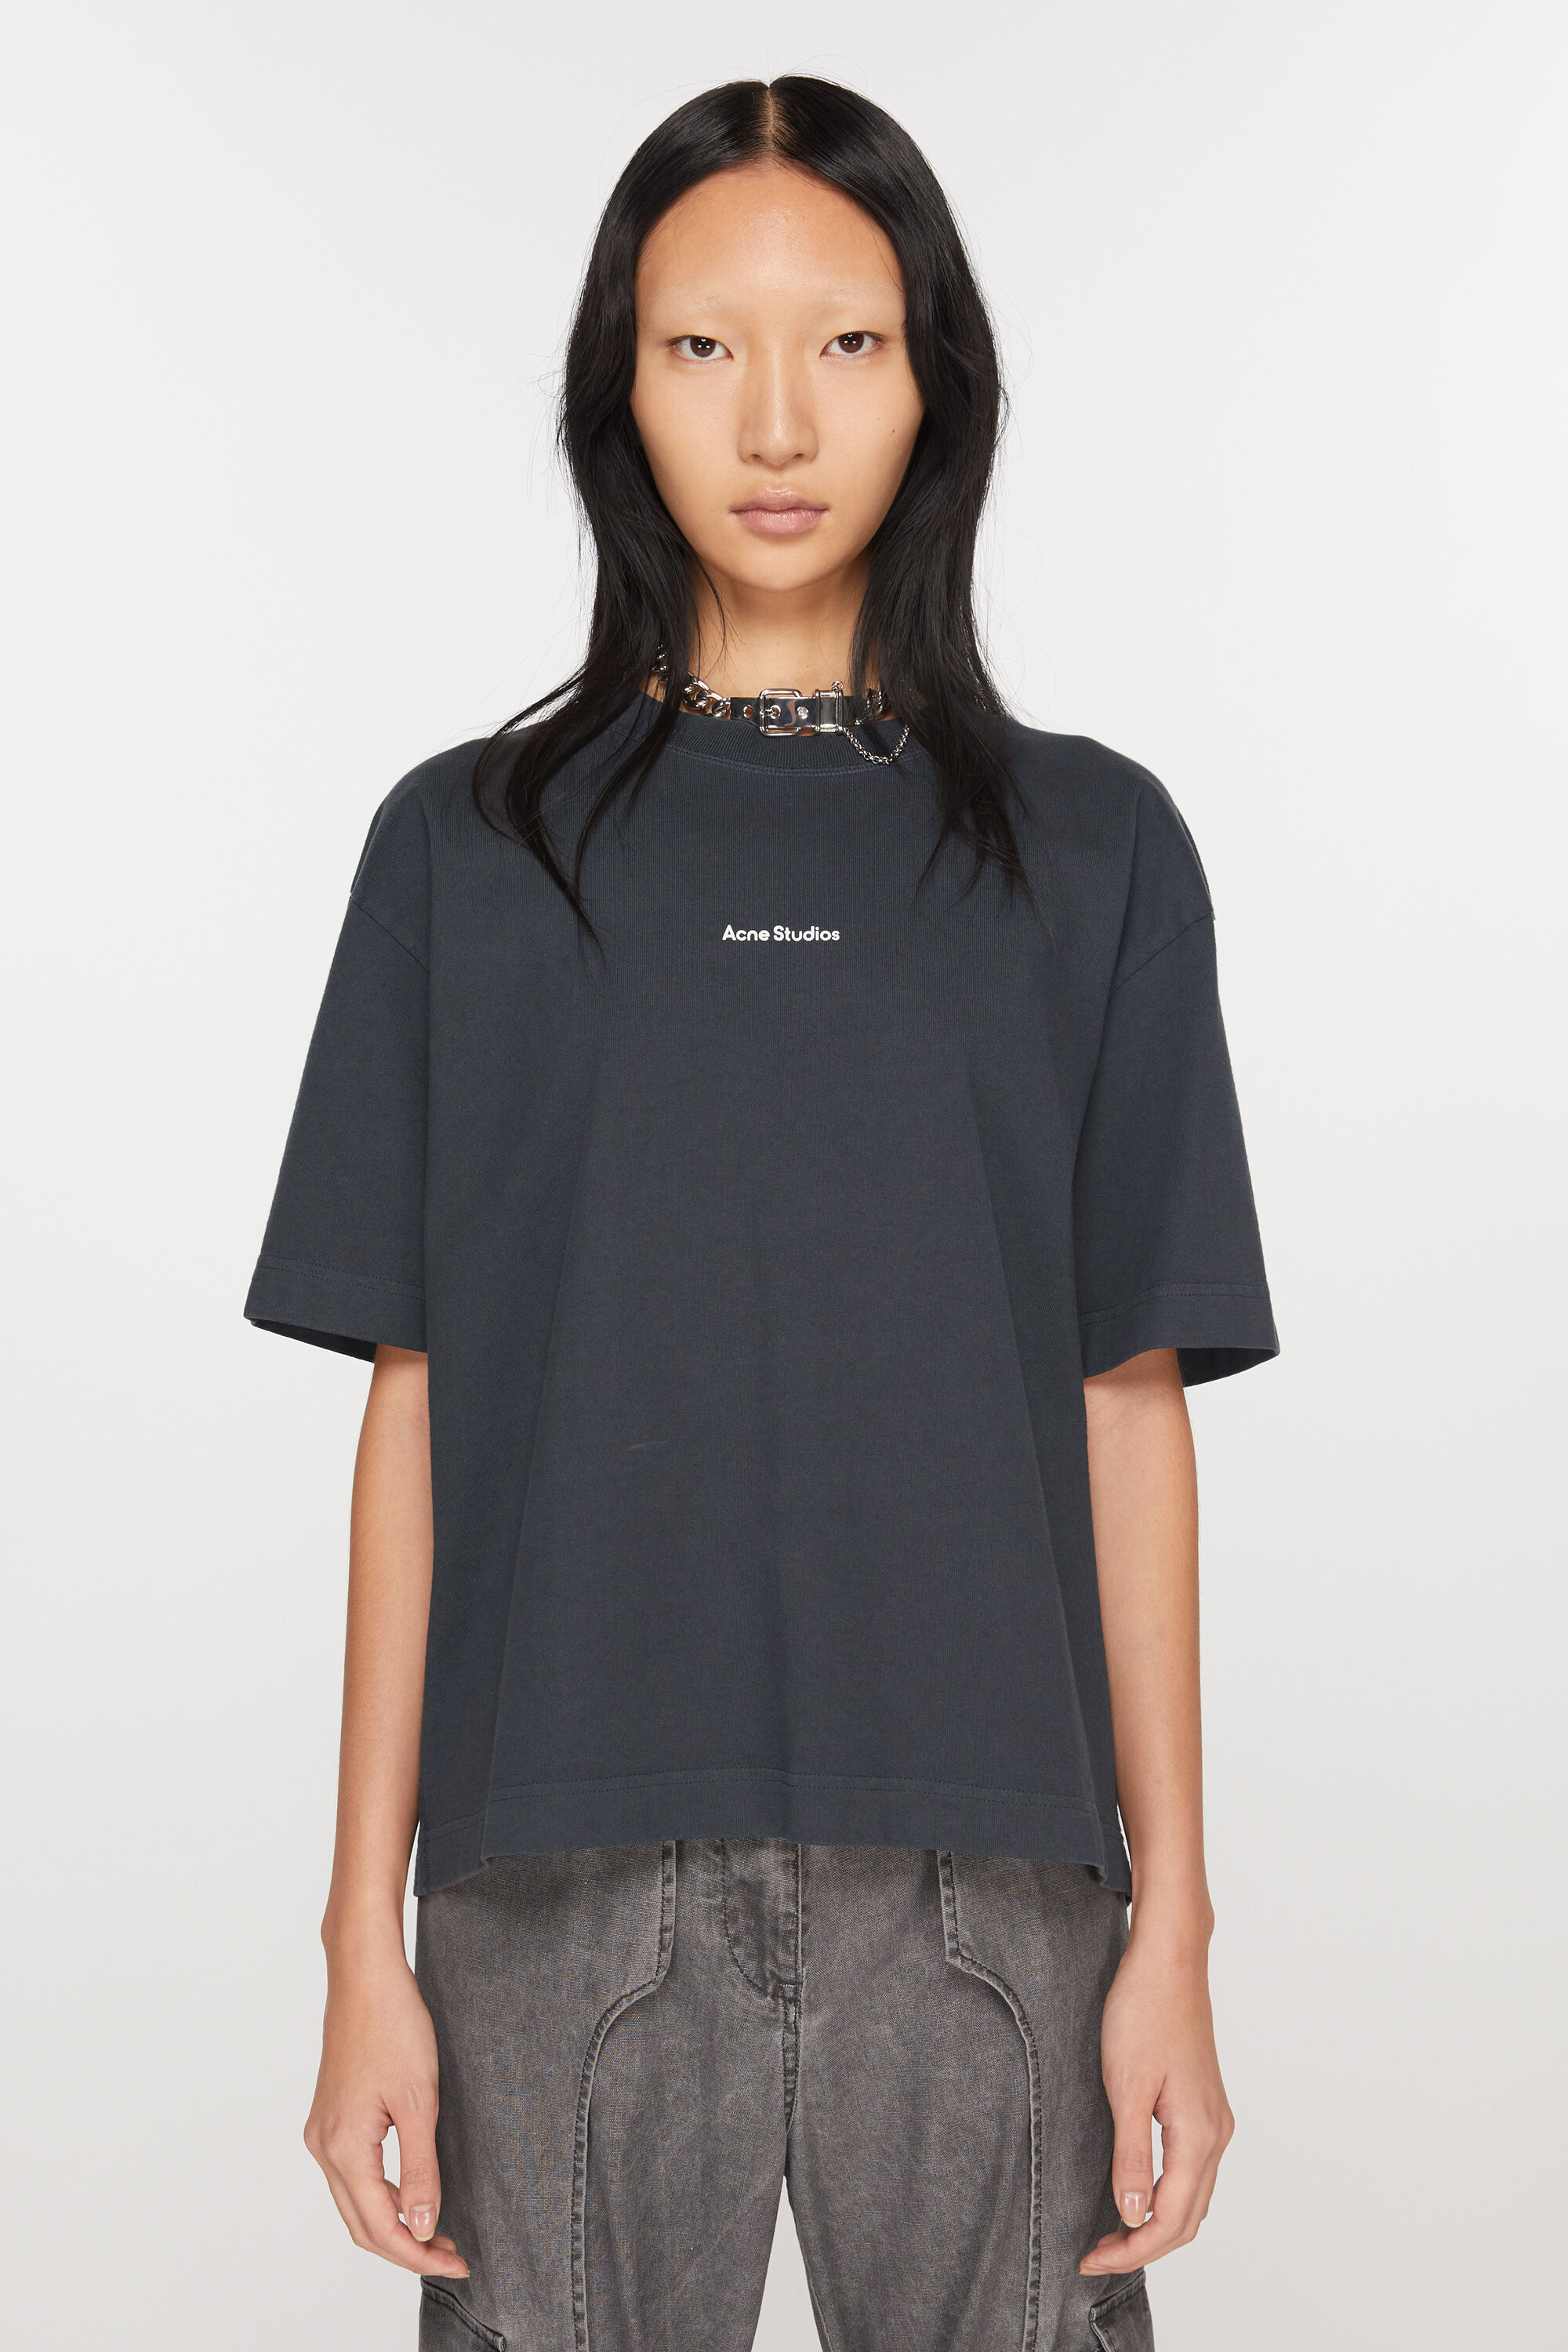 超激得格安 acne studious ロゴ Tシャツ XSサイズの通販 by イマイ断捨